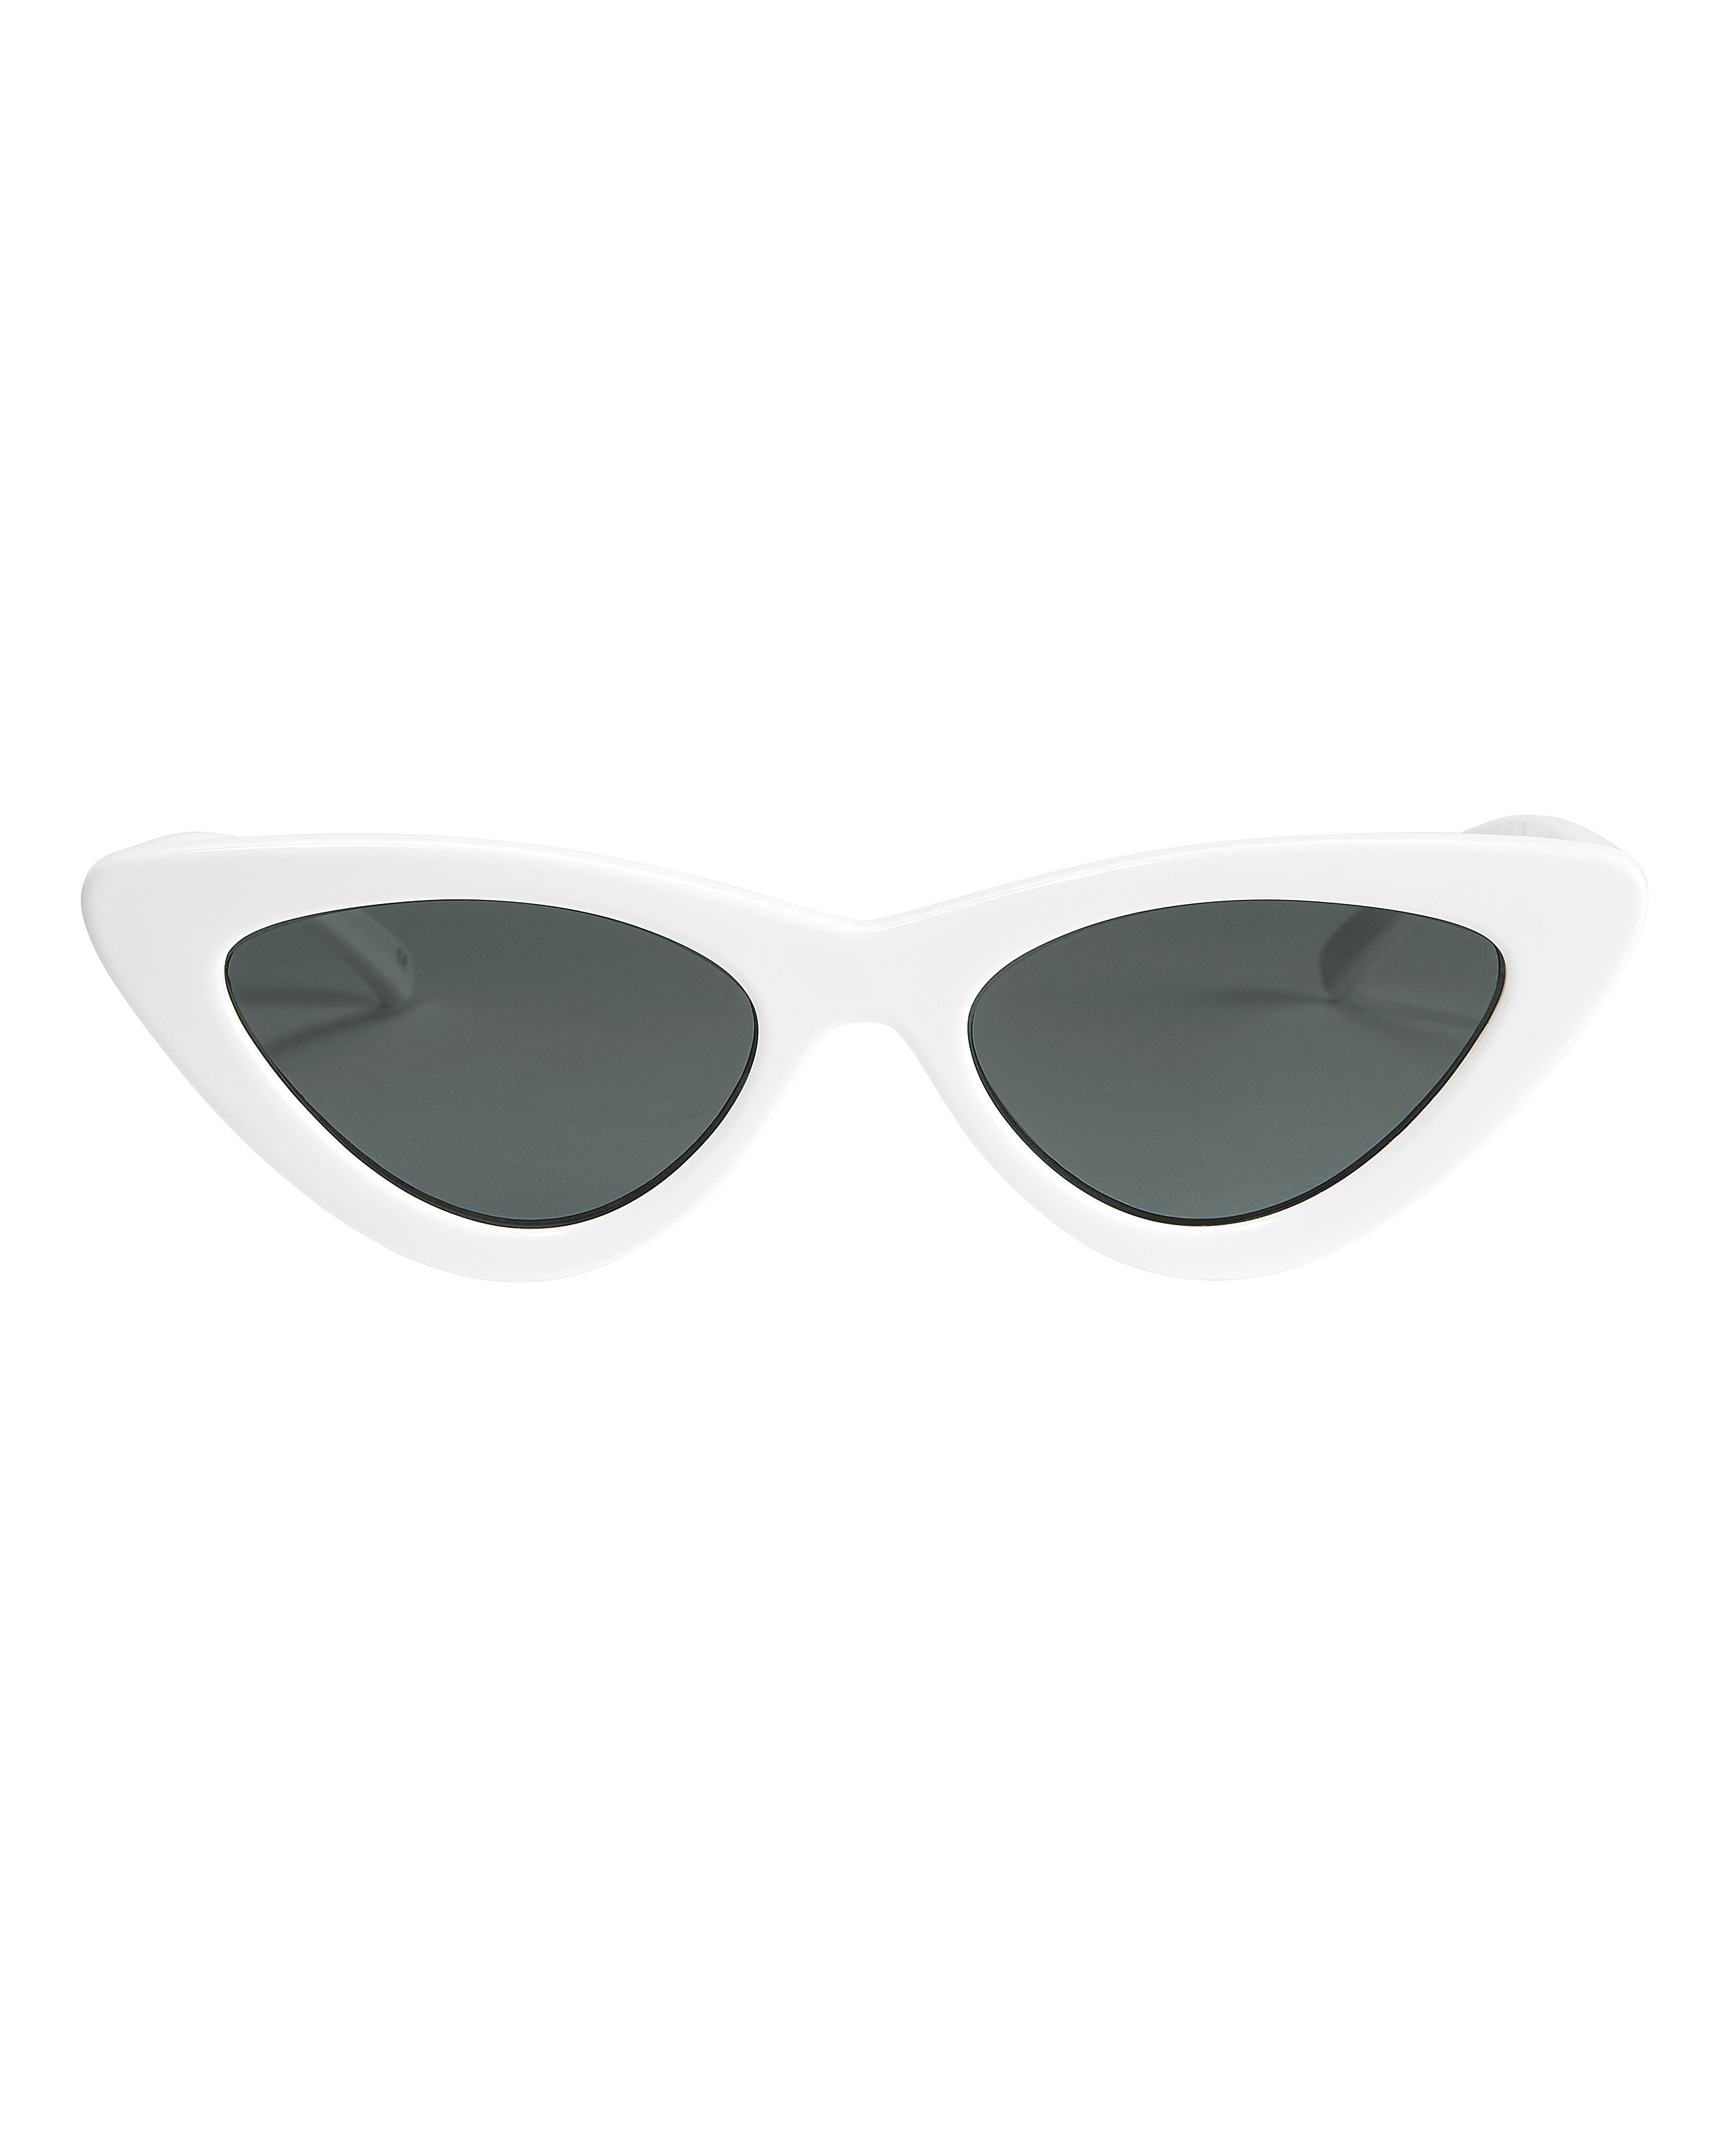 Le Specs Luxe X Adam Selman The Last Lolita White Cat Eye Sunglasses White 1Size | Intermix